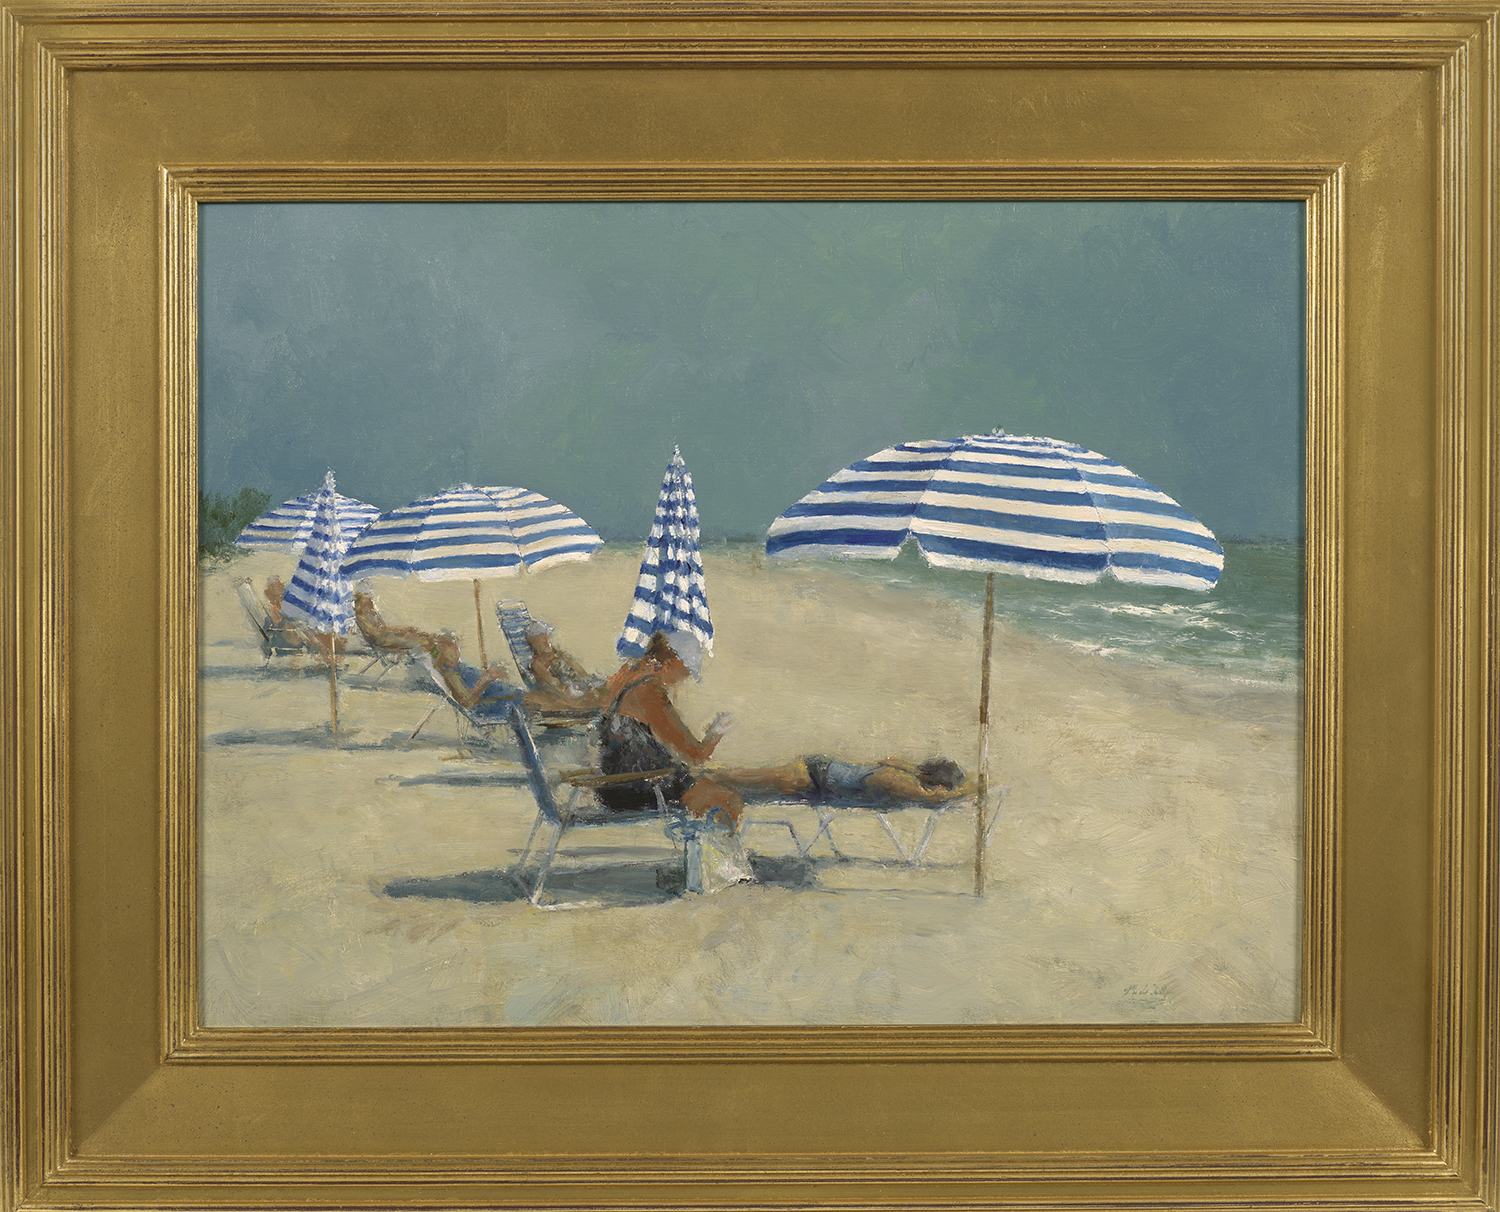 Striped Umbrella Beach Day - Daly, Mark